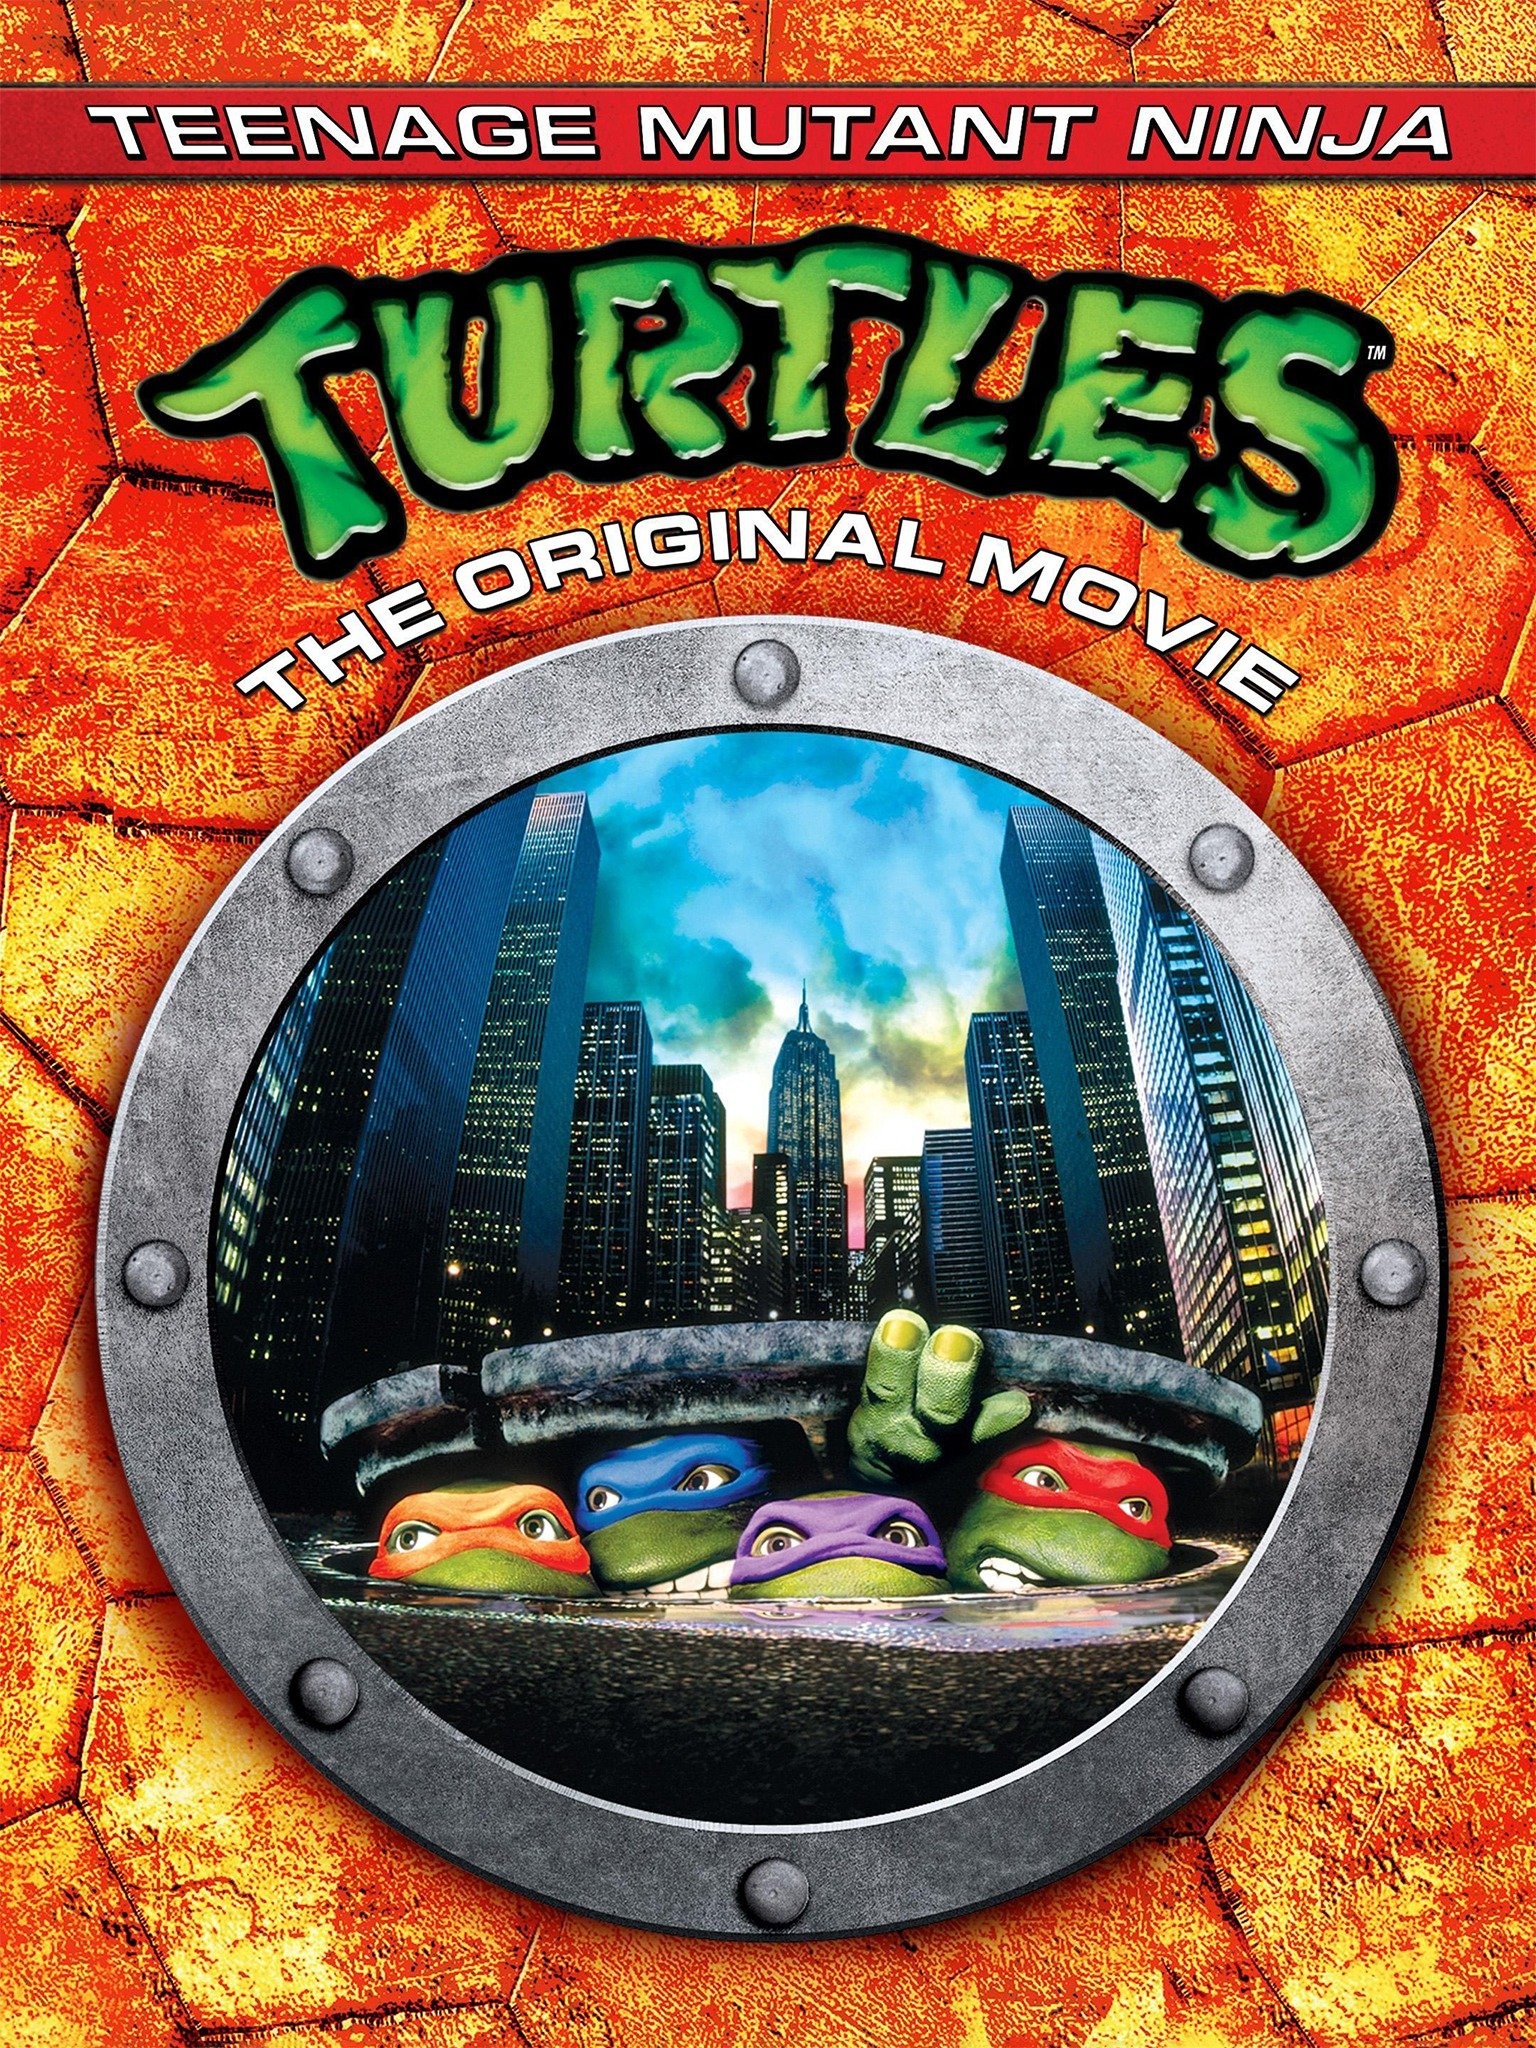 Teenage Mutant Ninja Turtles (1990 Film)